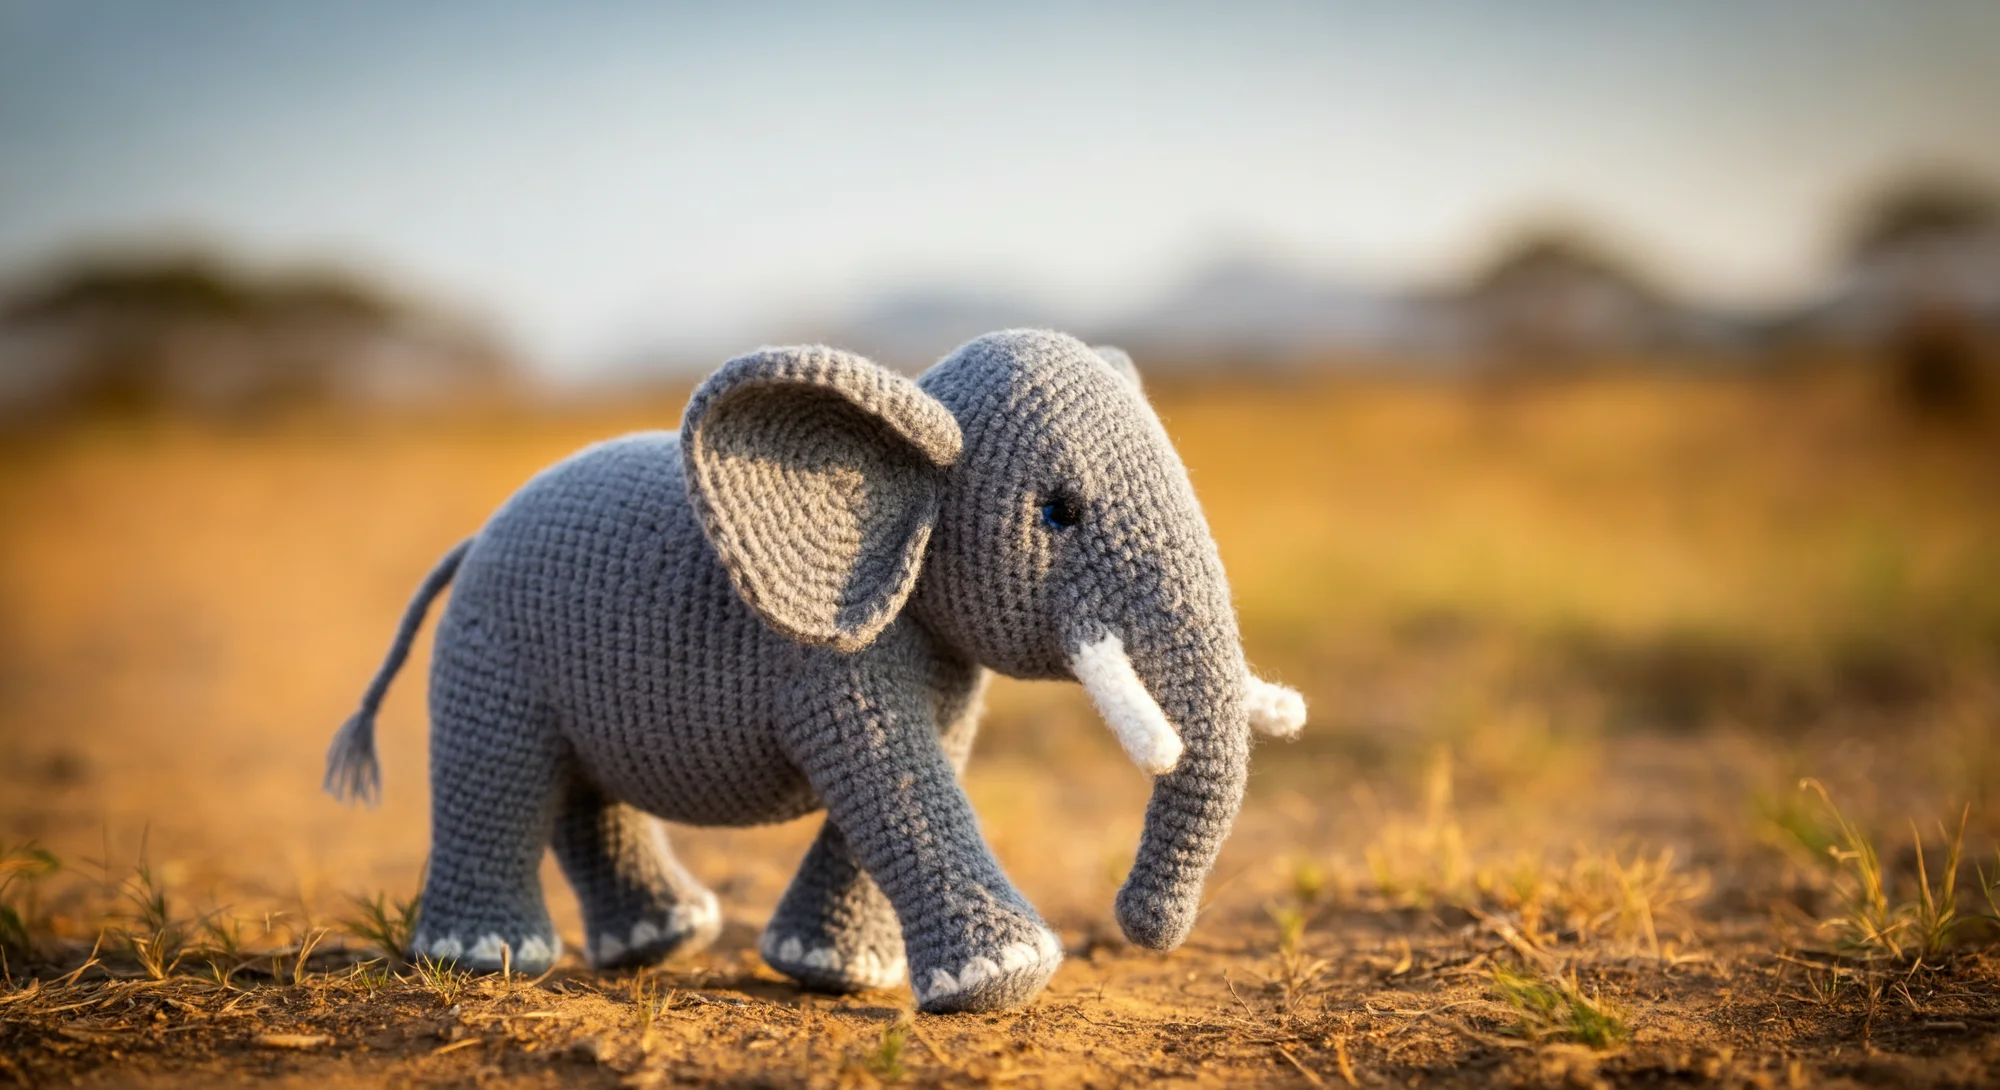 Un petit jouet éléphant gris au crochet se trouve sur un chemin de terre dans un champ herbeux. L'éléphant a des défenses et des ongles blancs et des yeux noirs. L’arrière-plan est un flou de feuillage vert et brun, avec le soleil se couchant au loin.